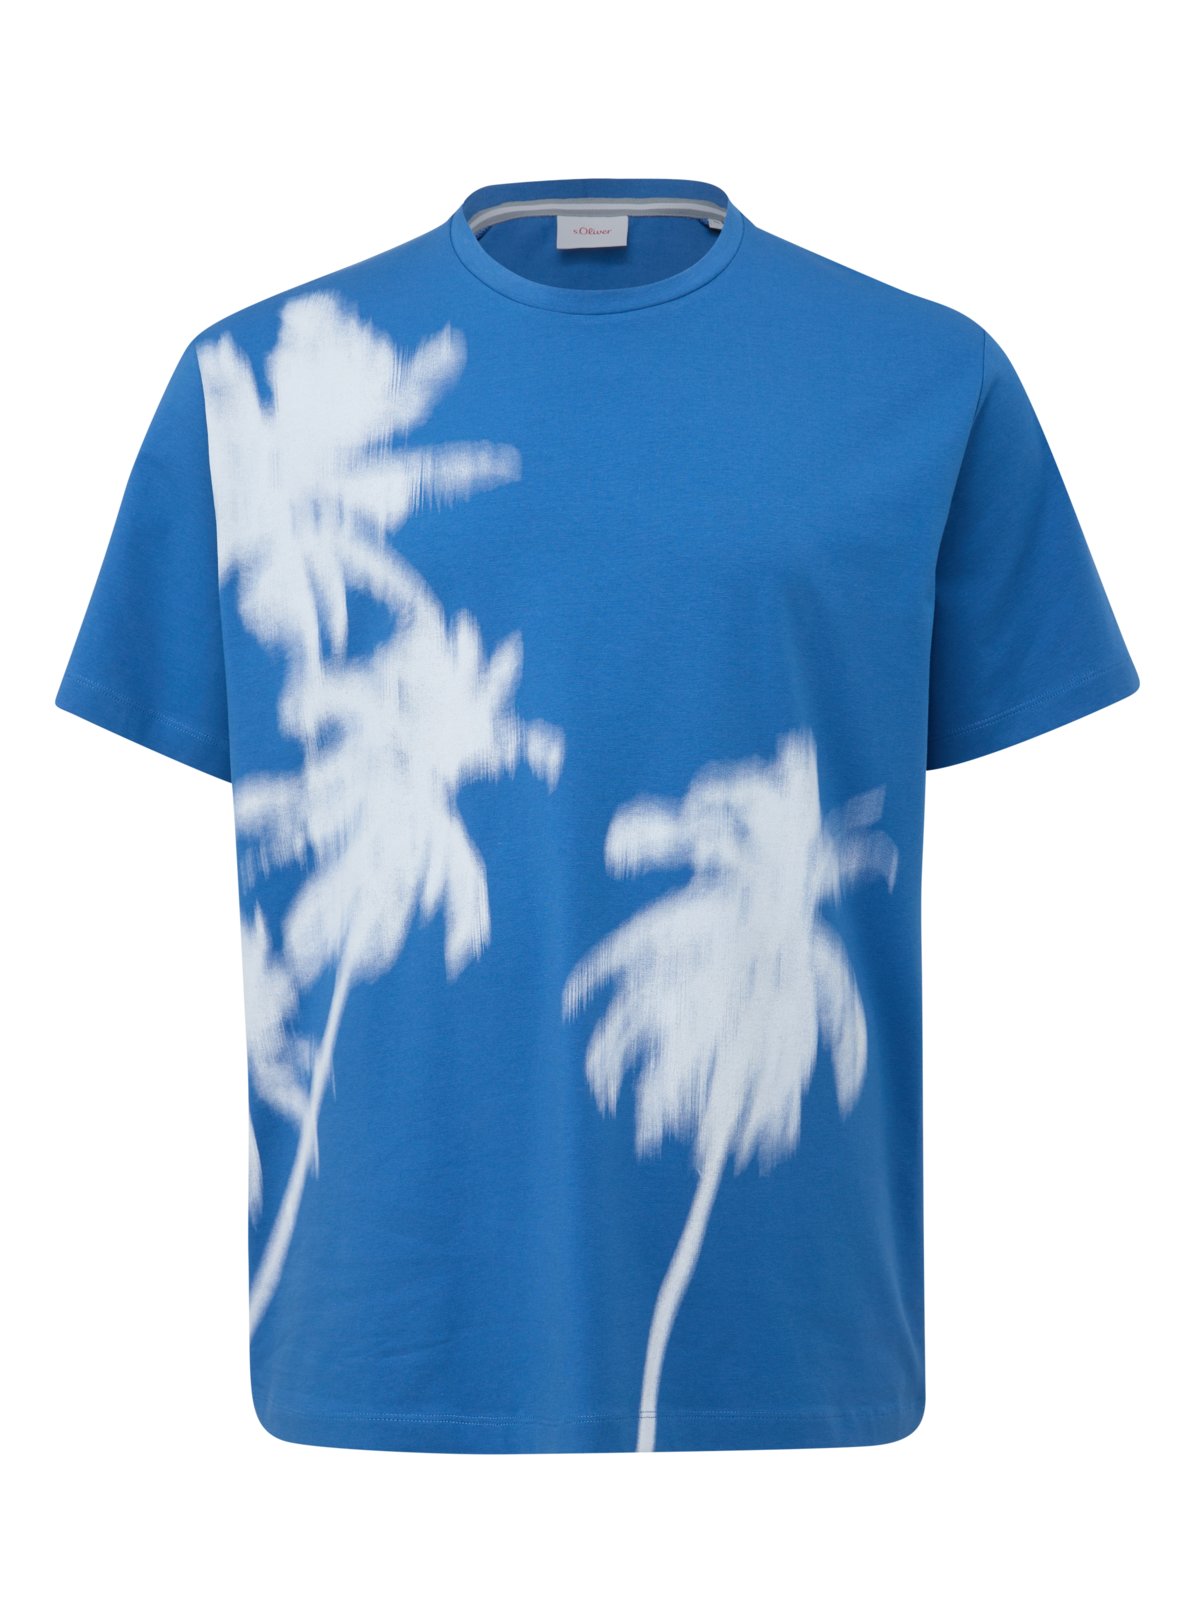 s.Oliver T-Shirt mit Palmen-Print, extralang